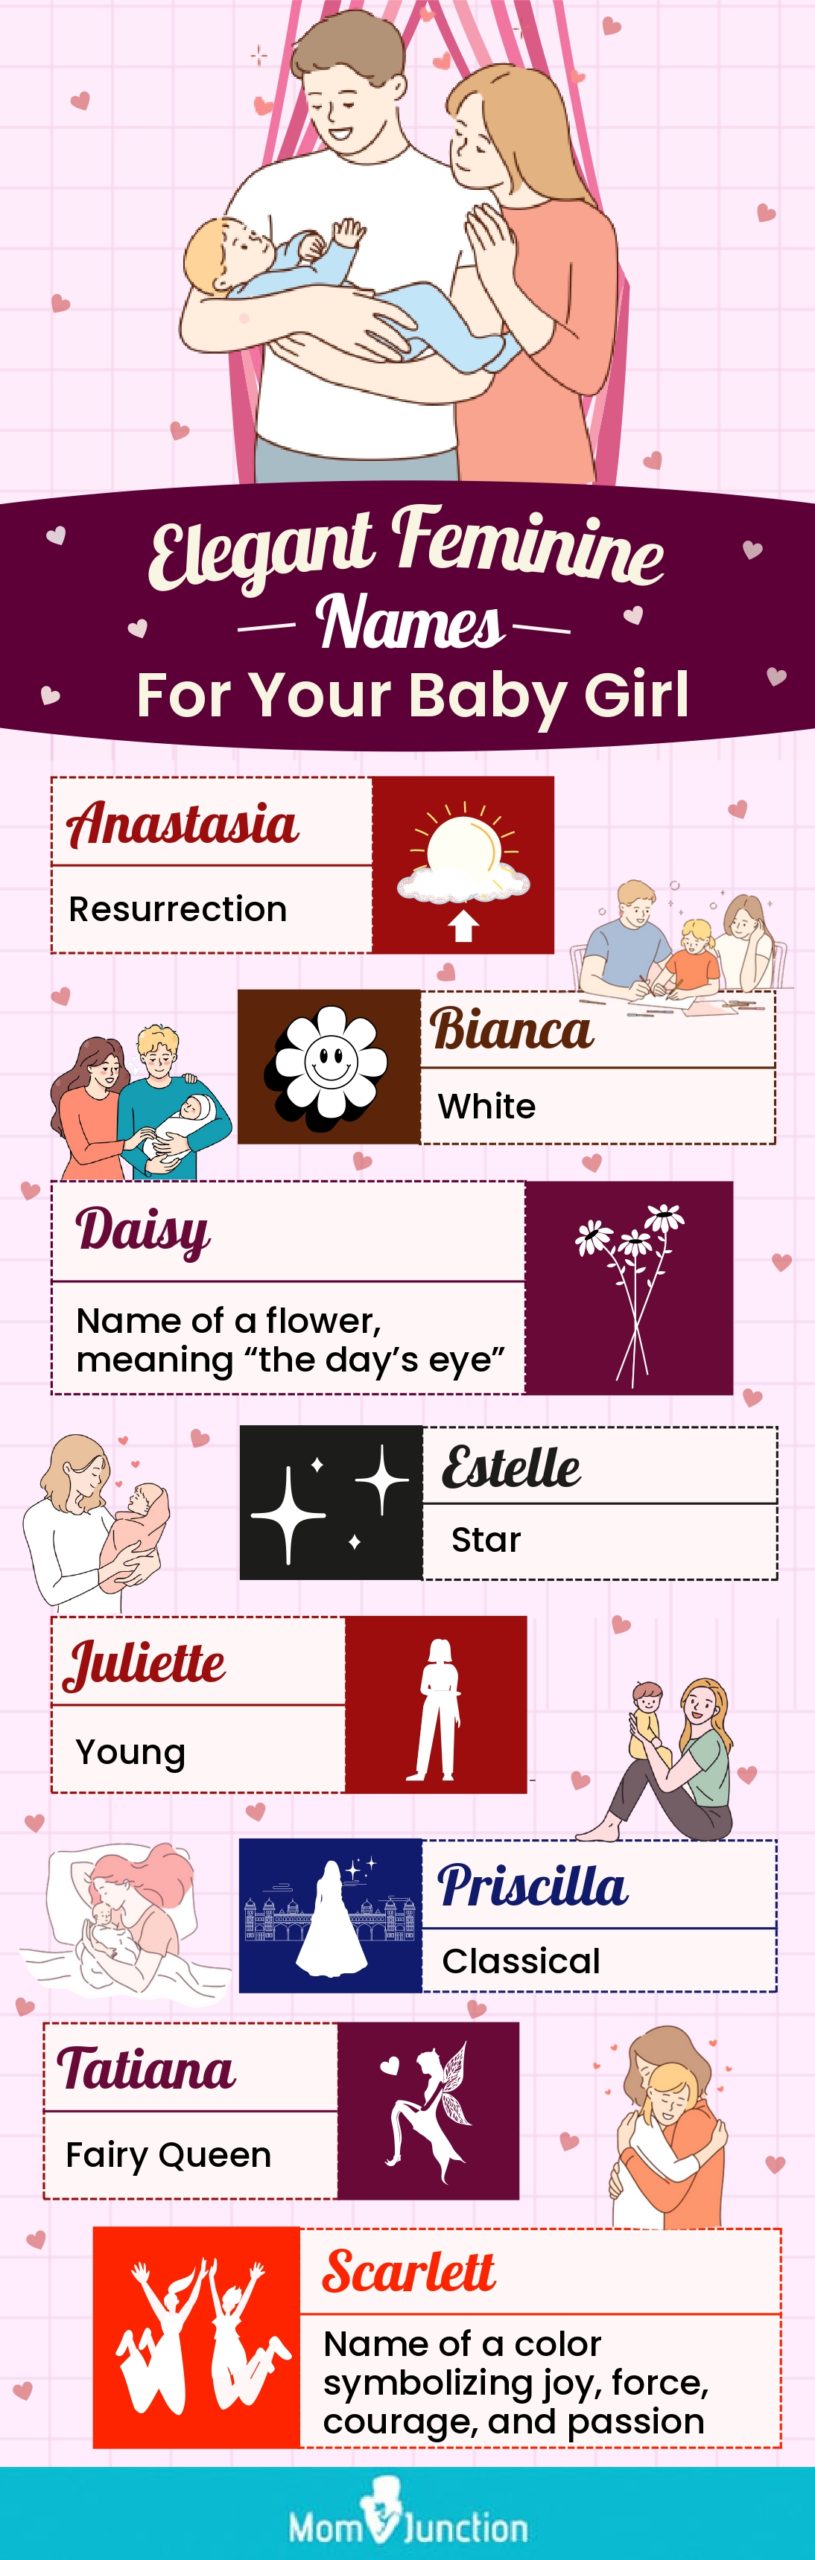 elegant feminine names for your baby girl (infographic)